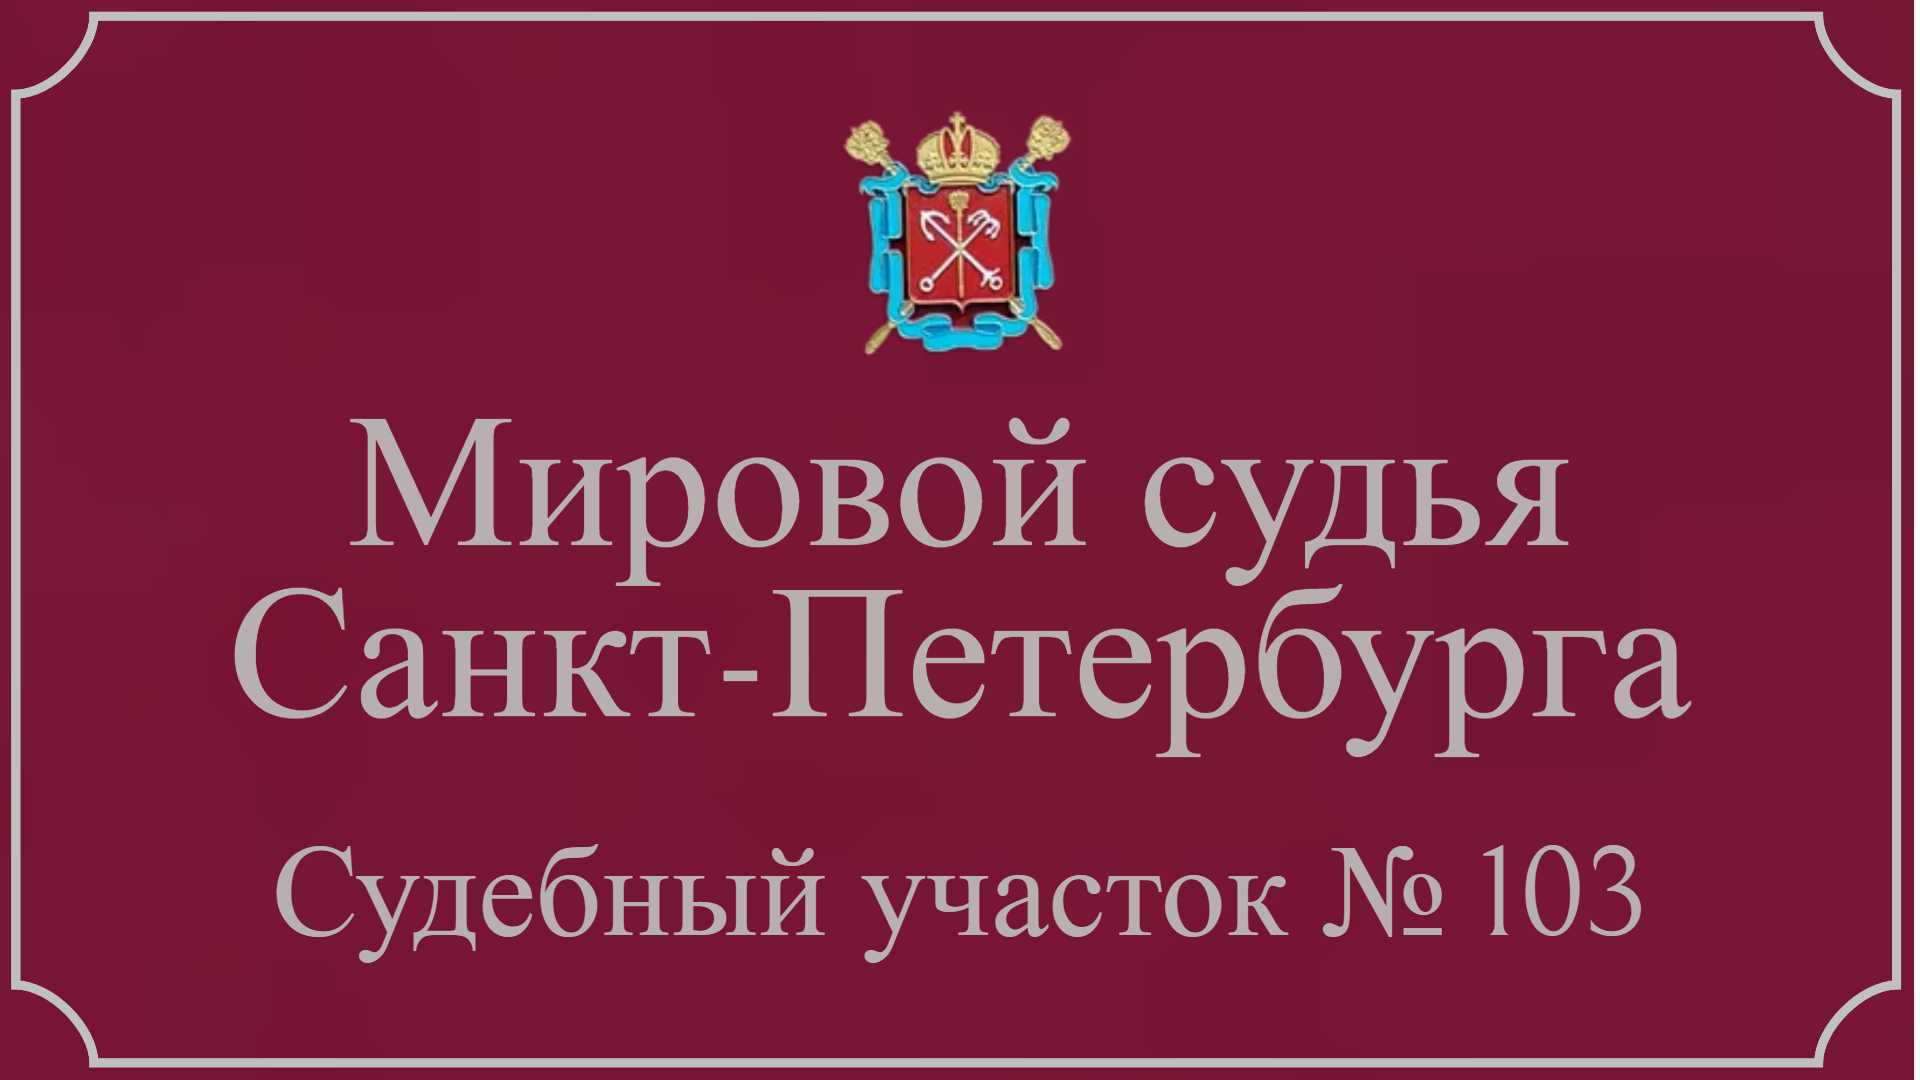 Информация по 103 судебному участку в Санкт-Петербурге.